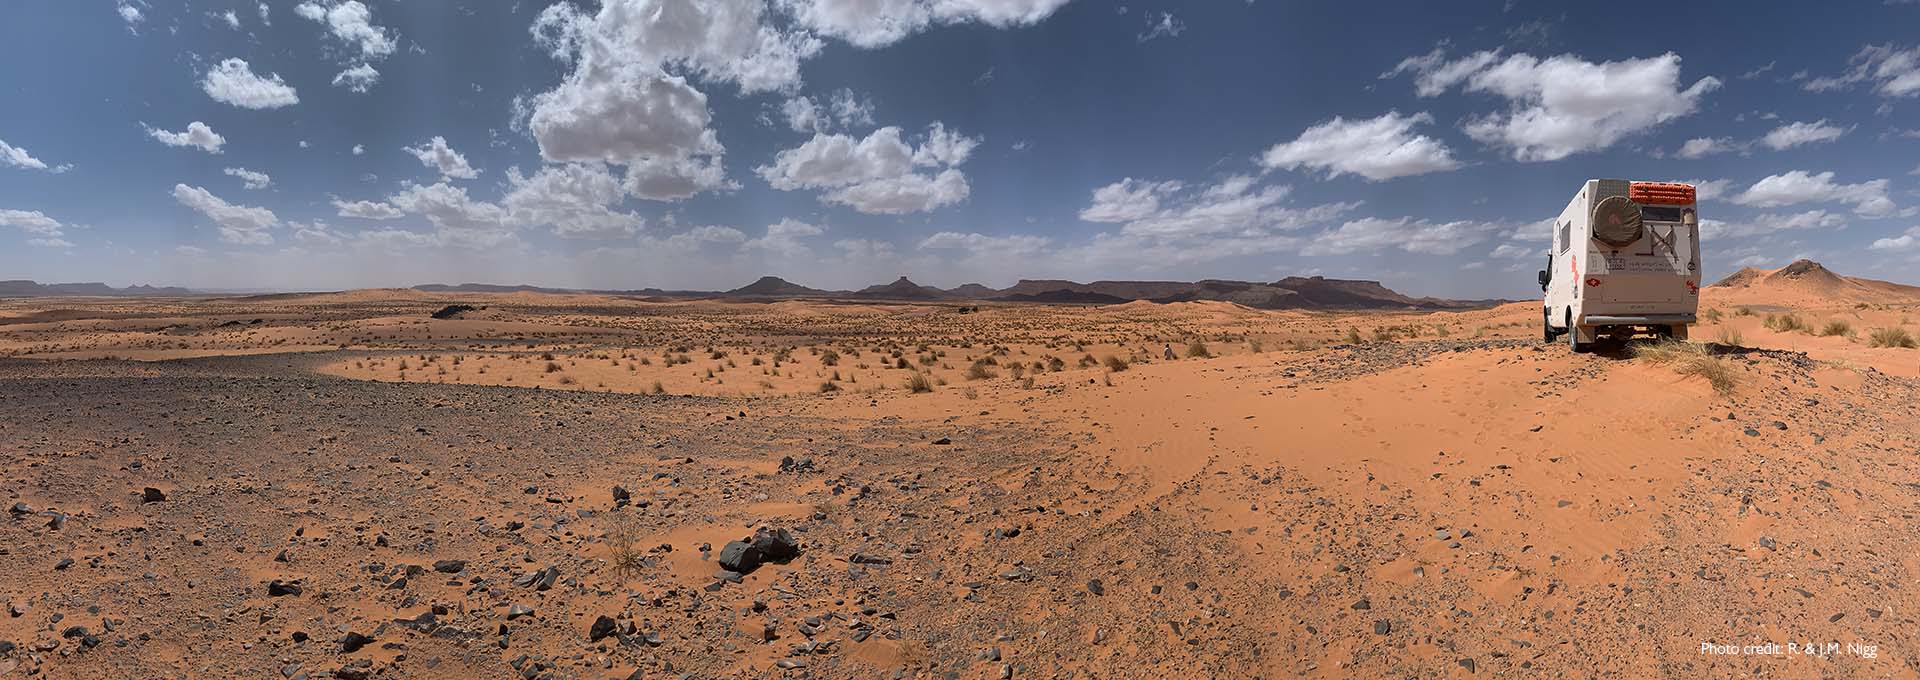 Casa mobile degli utenti di apparecchi acustici Bernafon Alpha in fuoristrada nel deserto con cielo azzurro, qualche nuvola bianca e sabbia rossastra